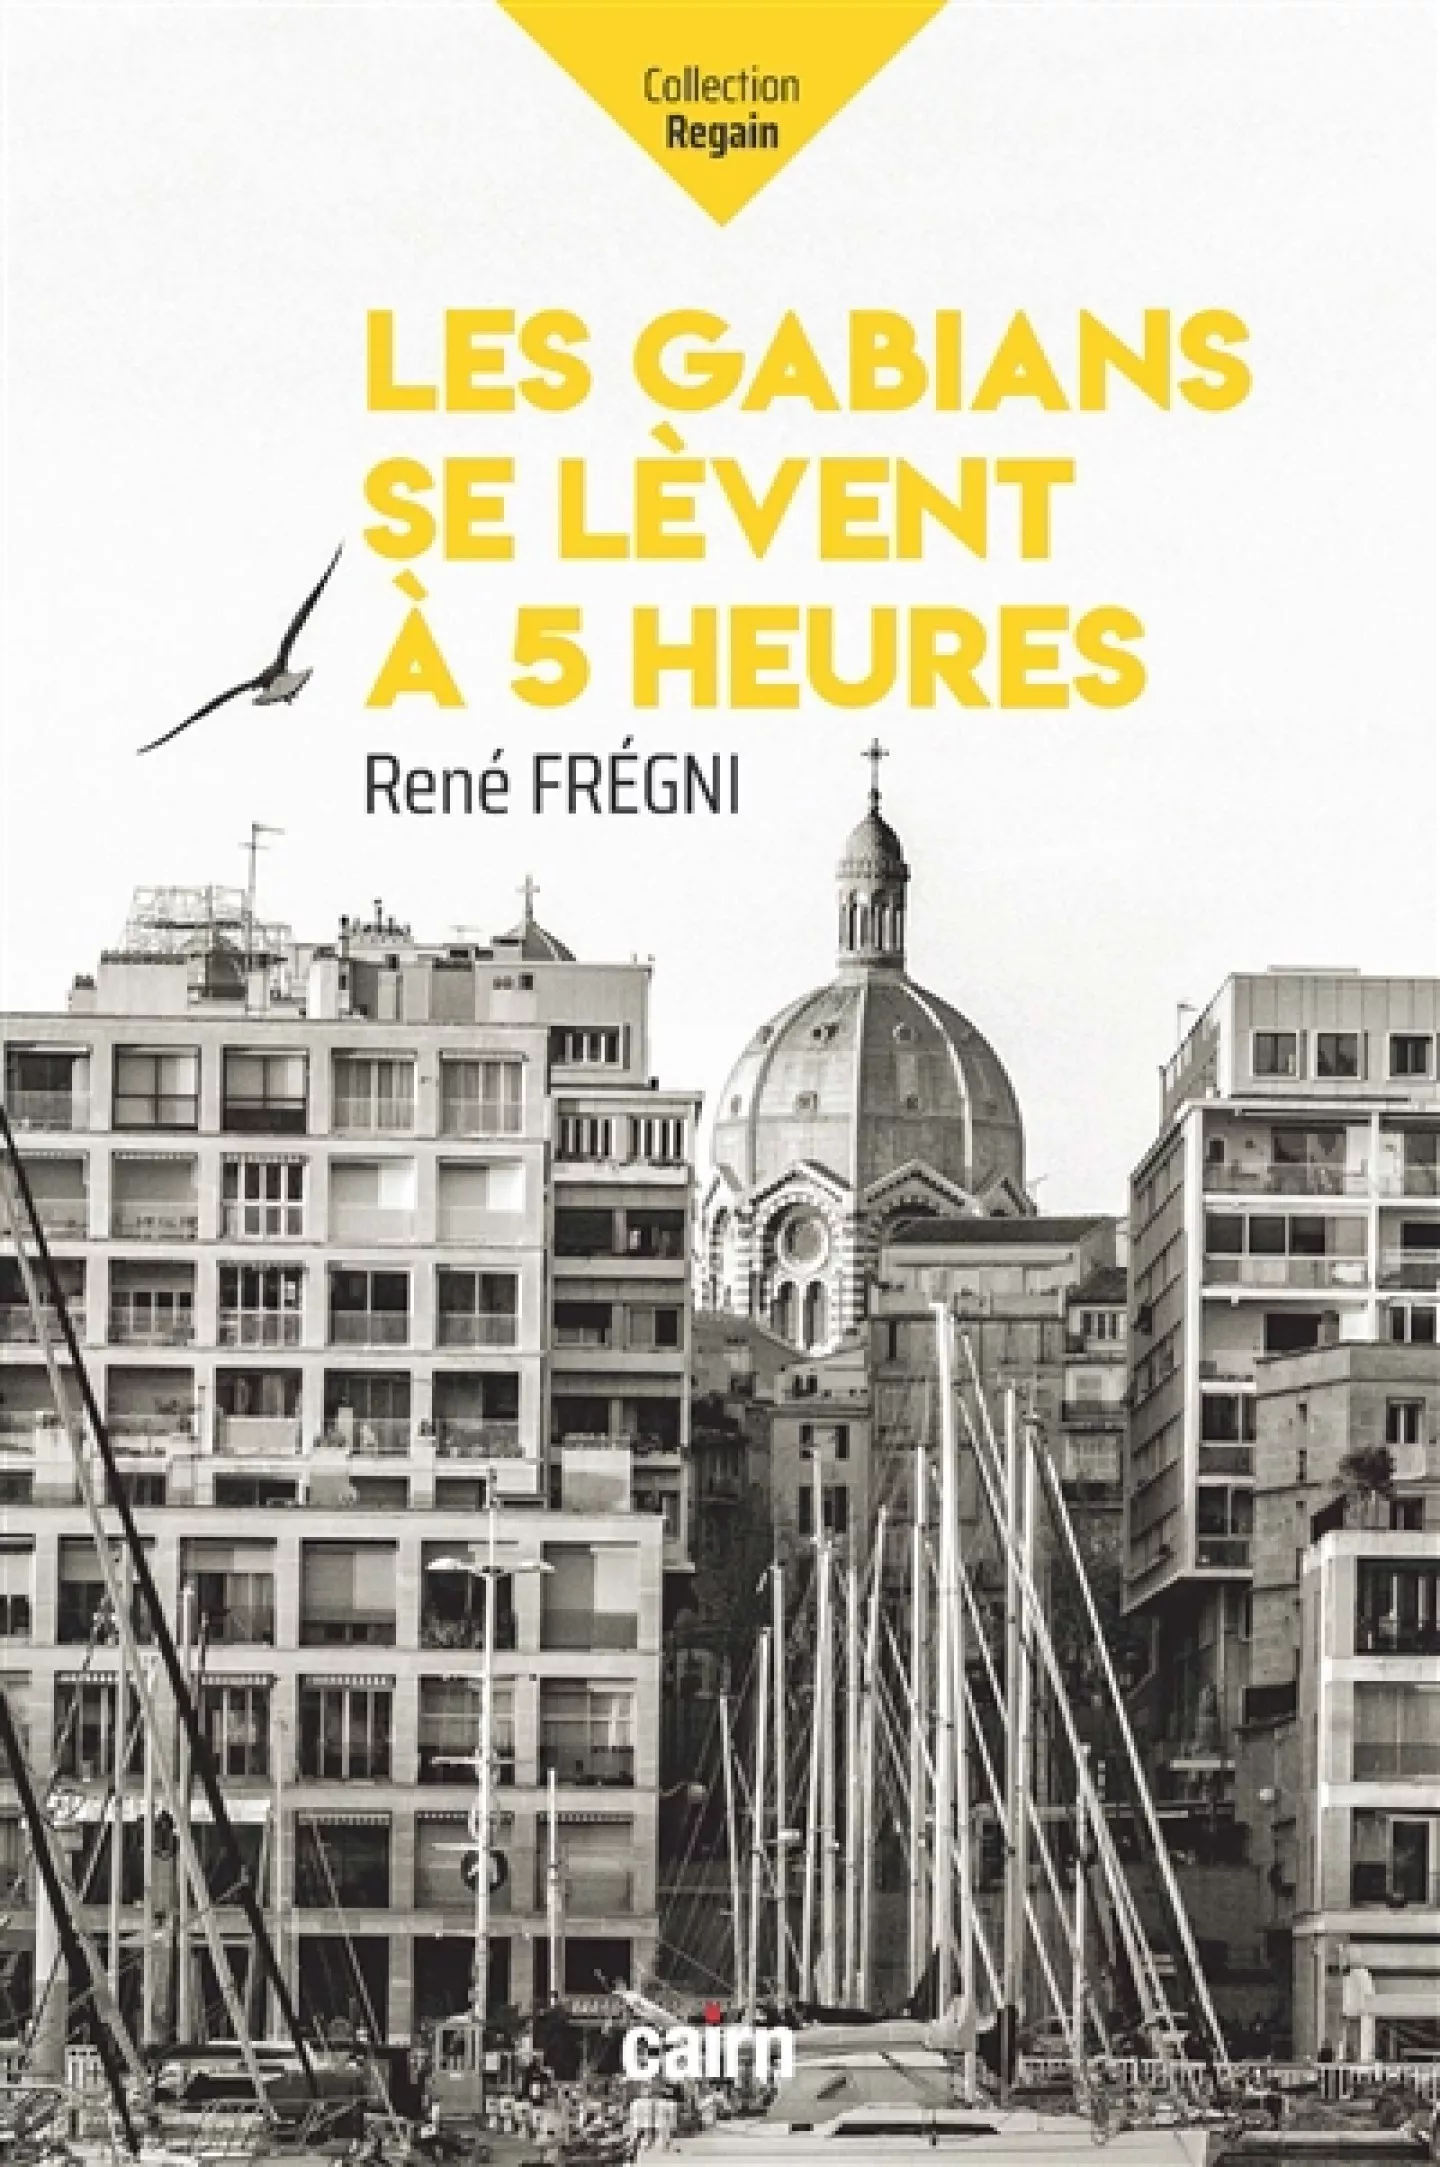 Les gabians se lèvent à 5 heures de René Frégni